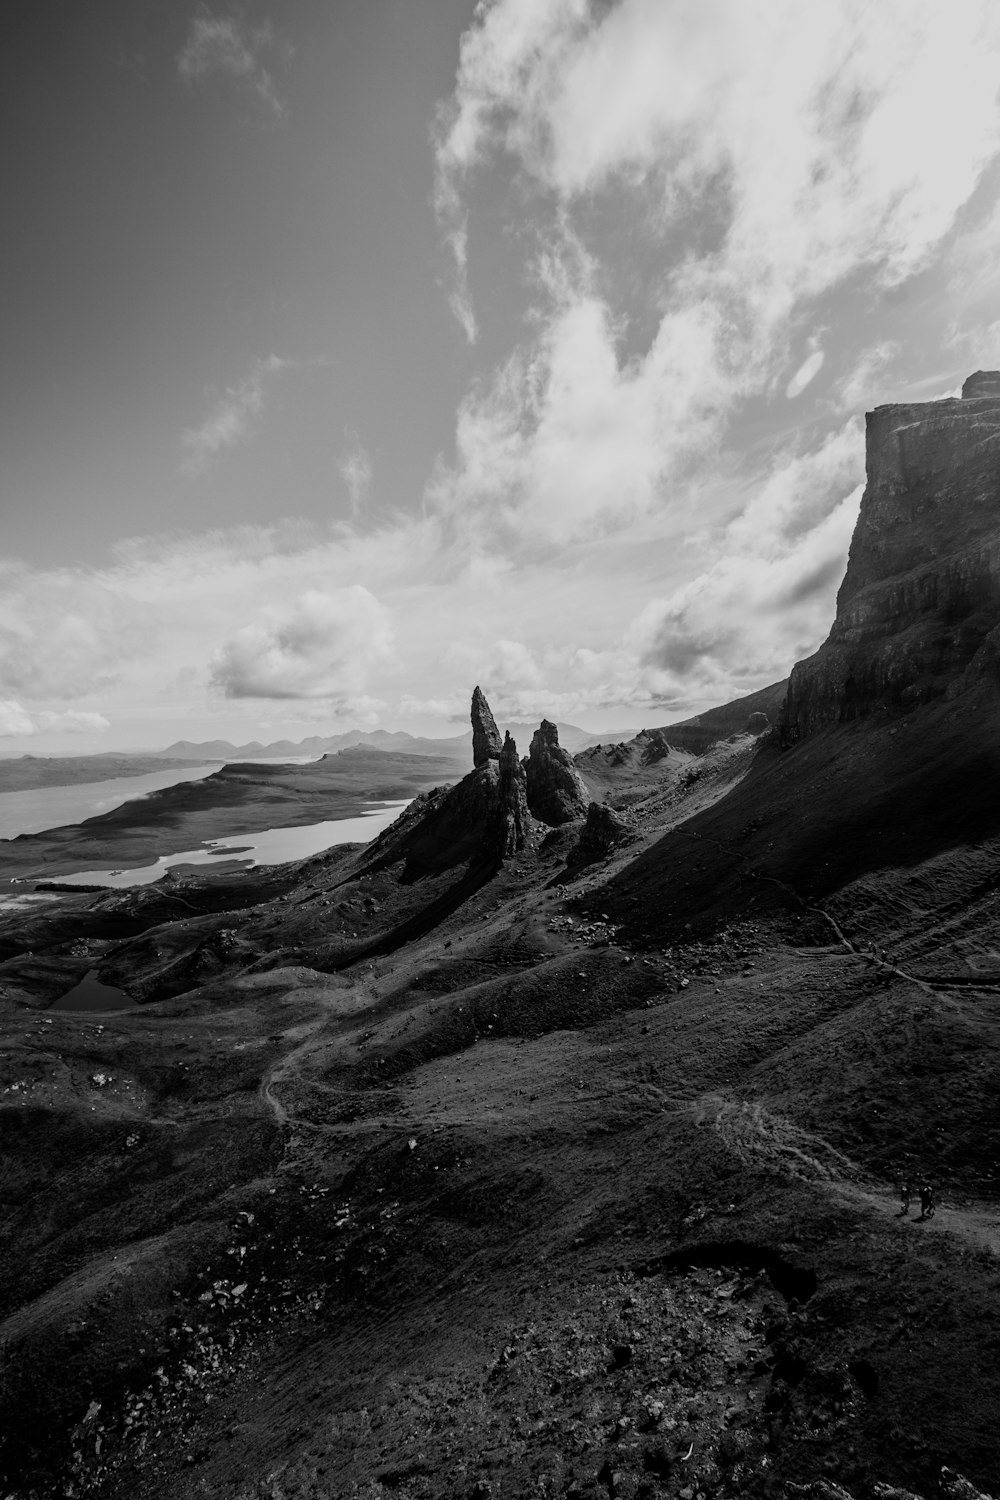 Una foto en blanco y negro de algunas rocas y agua